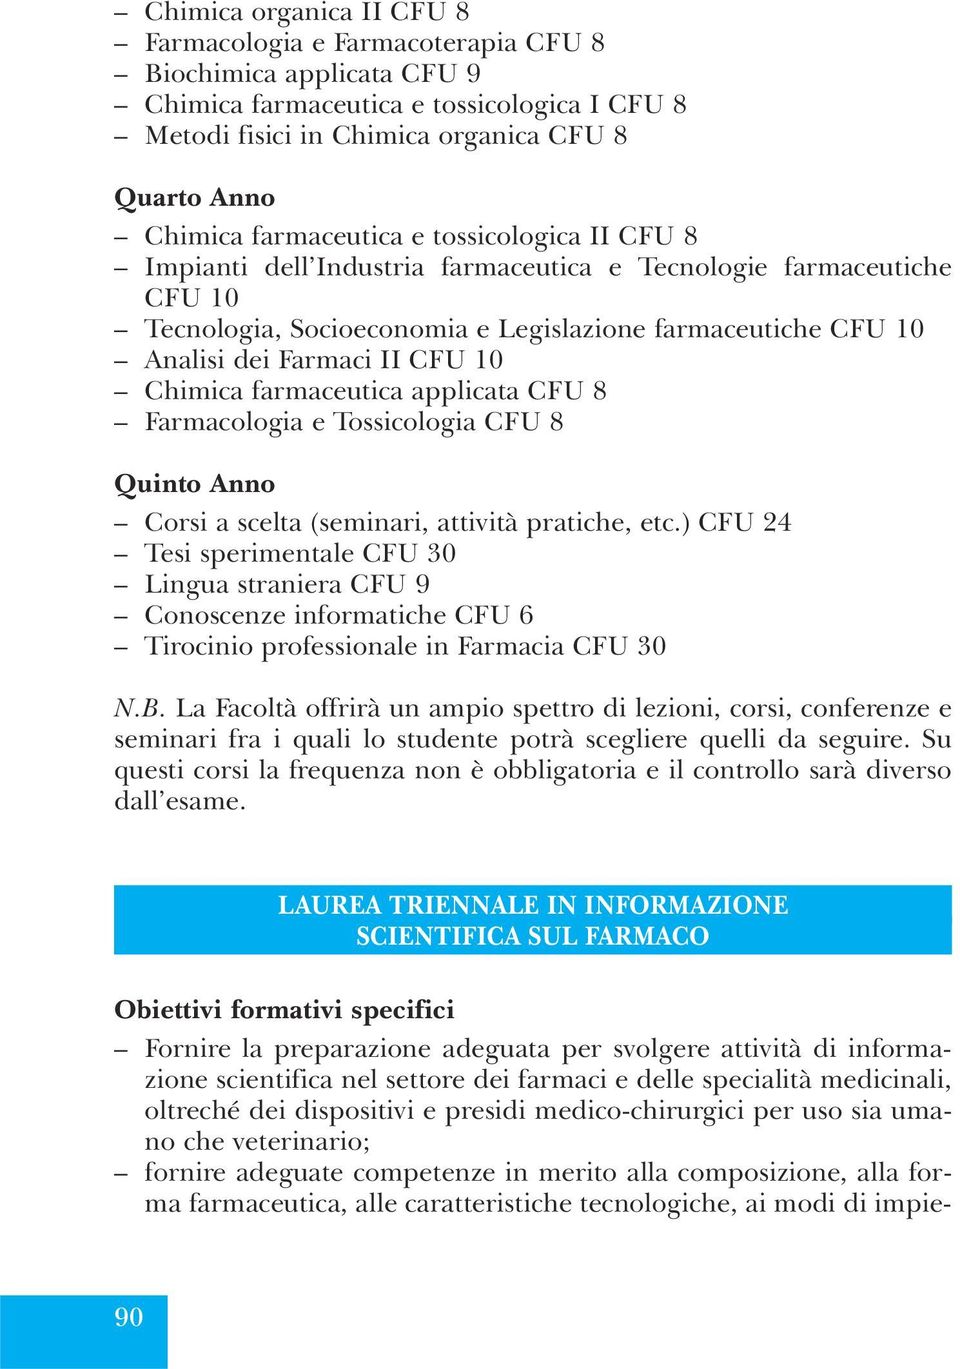 10 Chimica farmaceutica applicata CFU 8 Farmacologia e Tossicologia CFU 8 Quinto Anno Corsi a scelta (seminari, attività pratiche, etc.